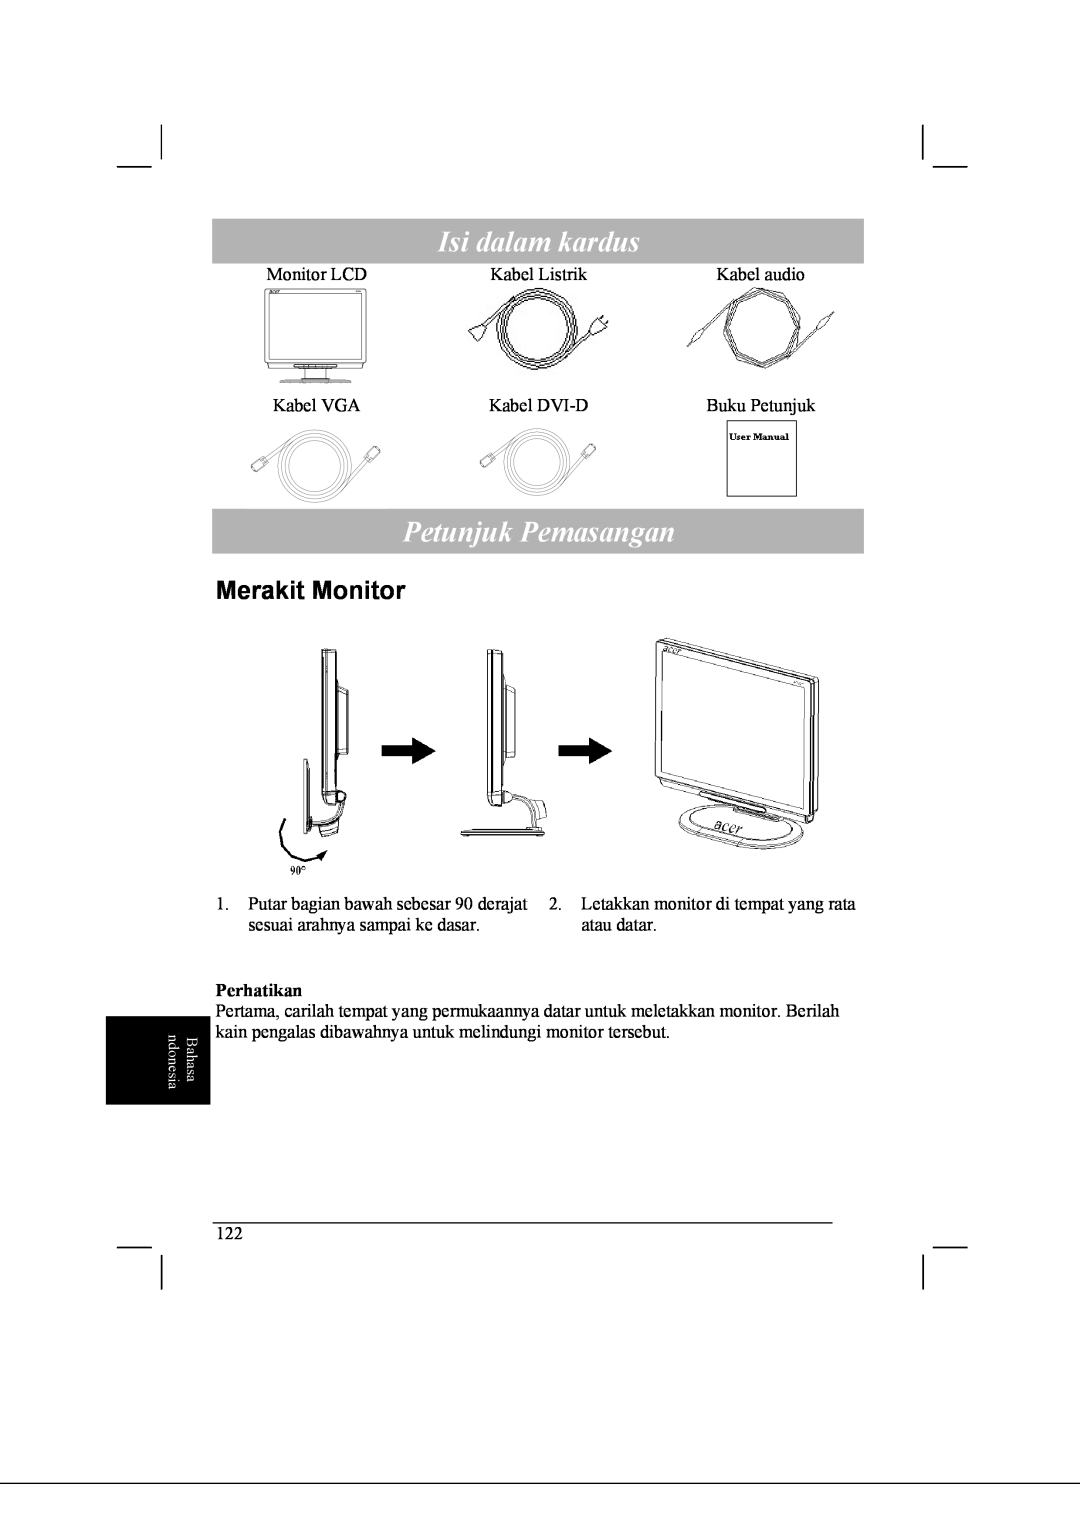 Acer AL2021 manual Isi dalam kardus, Petunjuk Pemasangan, Merakit Monitor 